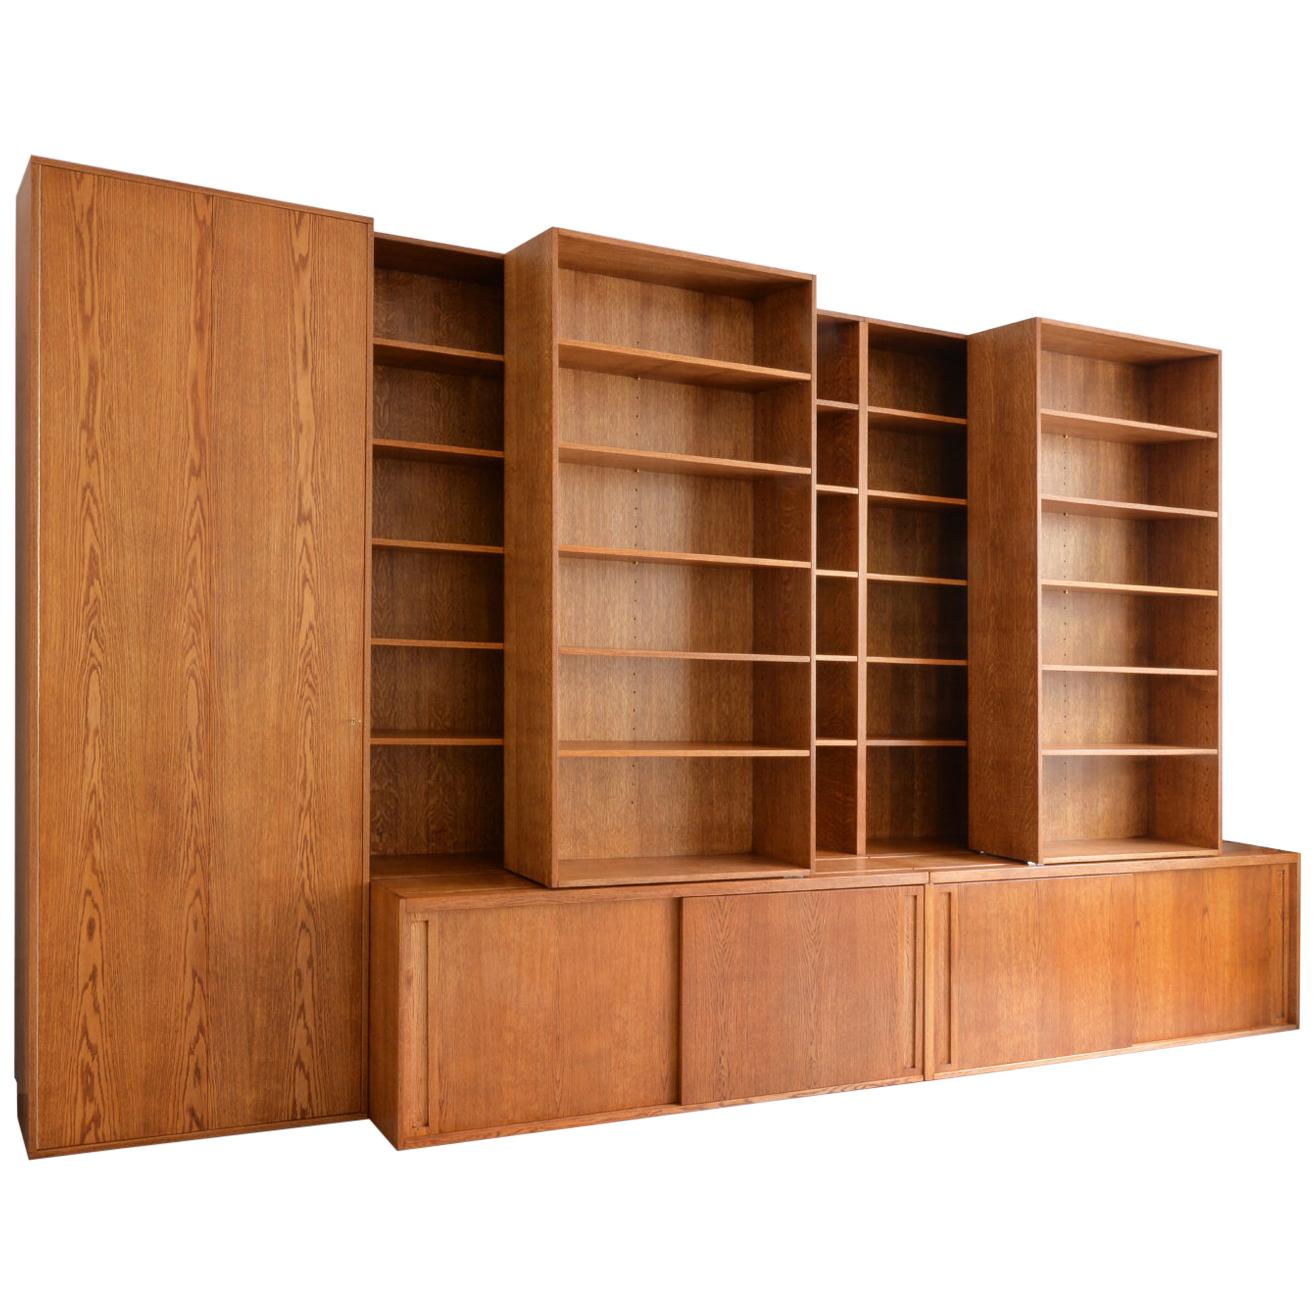 Maßgefertigter Bücherregal aus handgefertigtem Holz mit Schiebe- und verstellbaren Einlegeböden